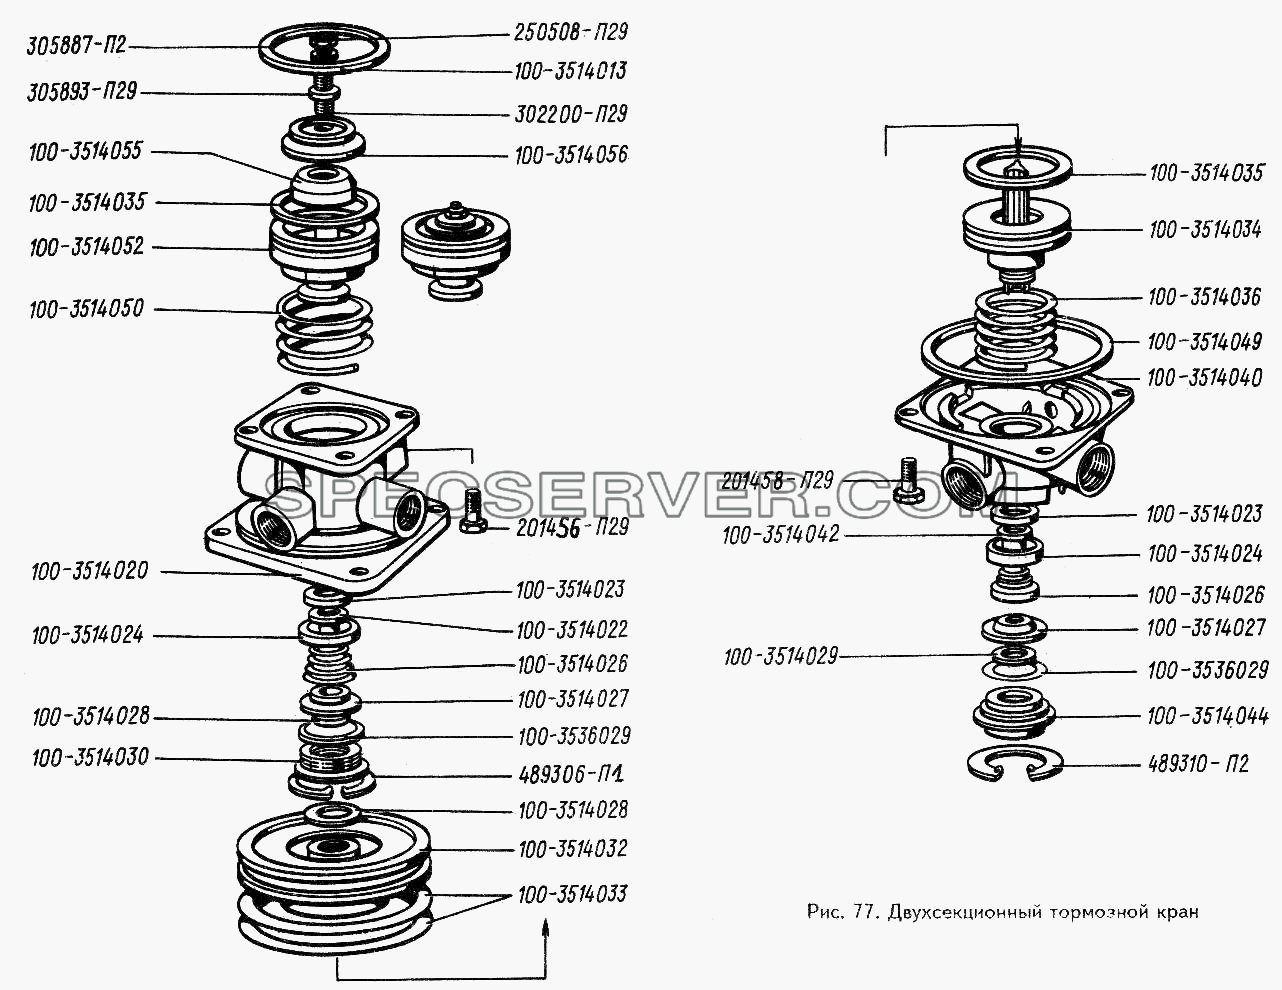 Двухсекционный тормозной кран для ЗИЛ 442160 (список запасных частей)